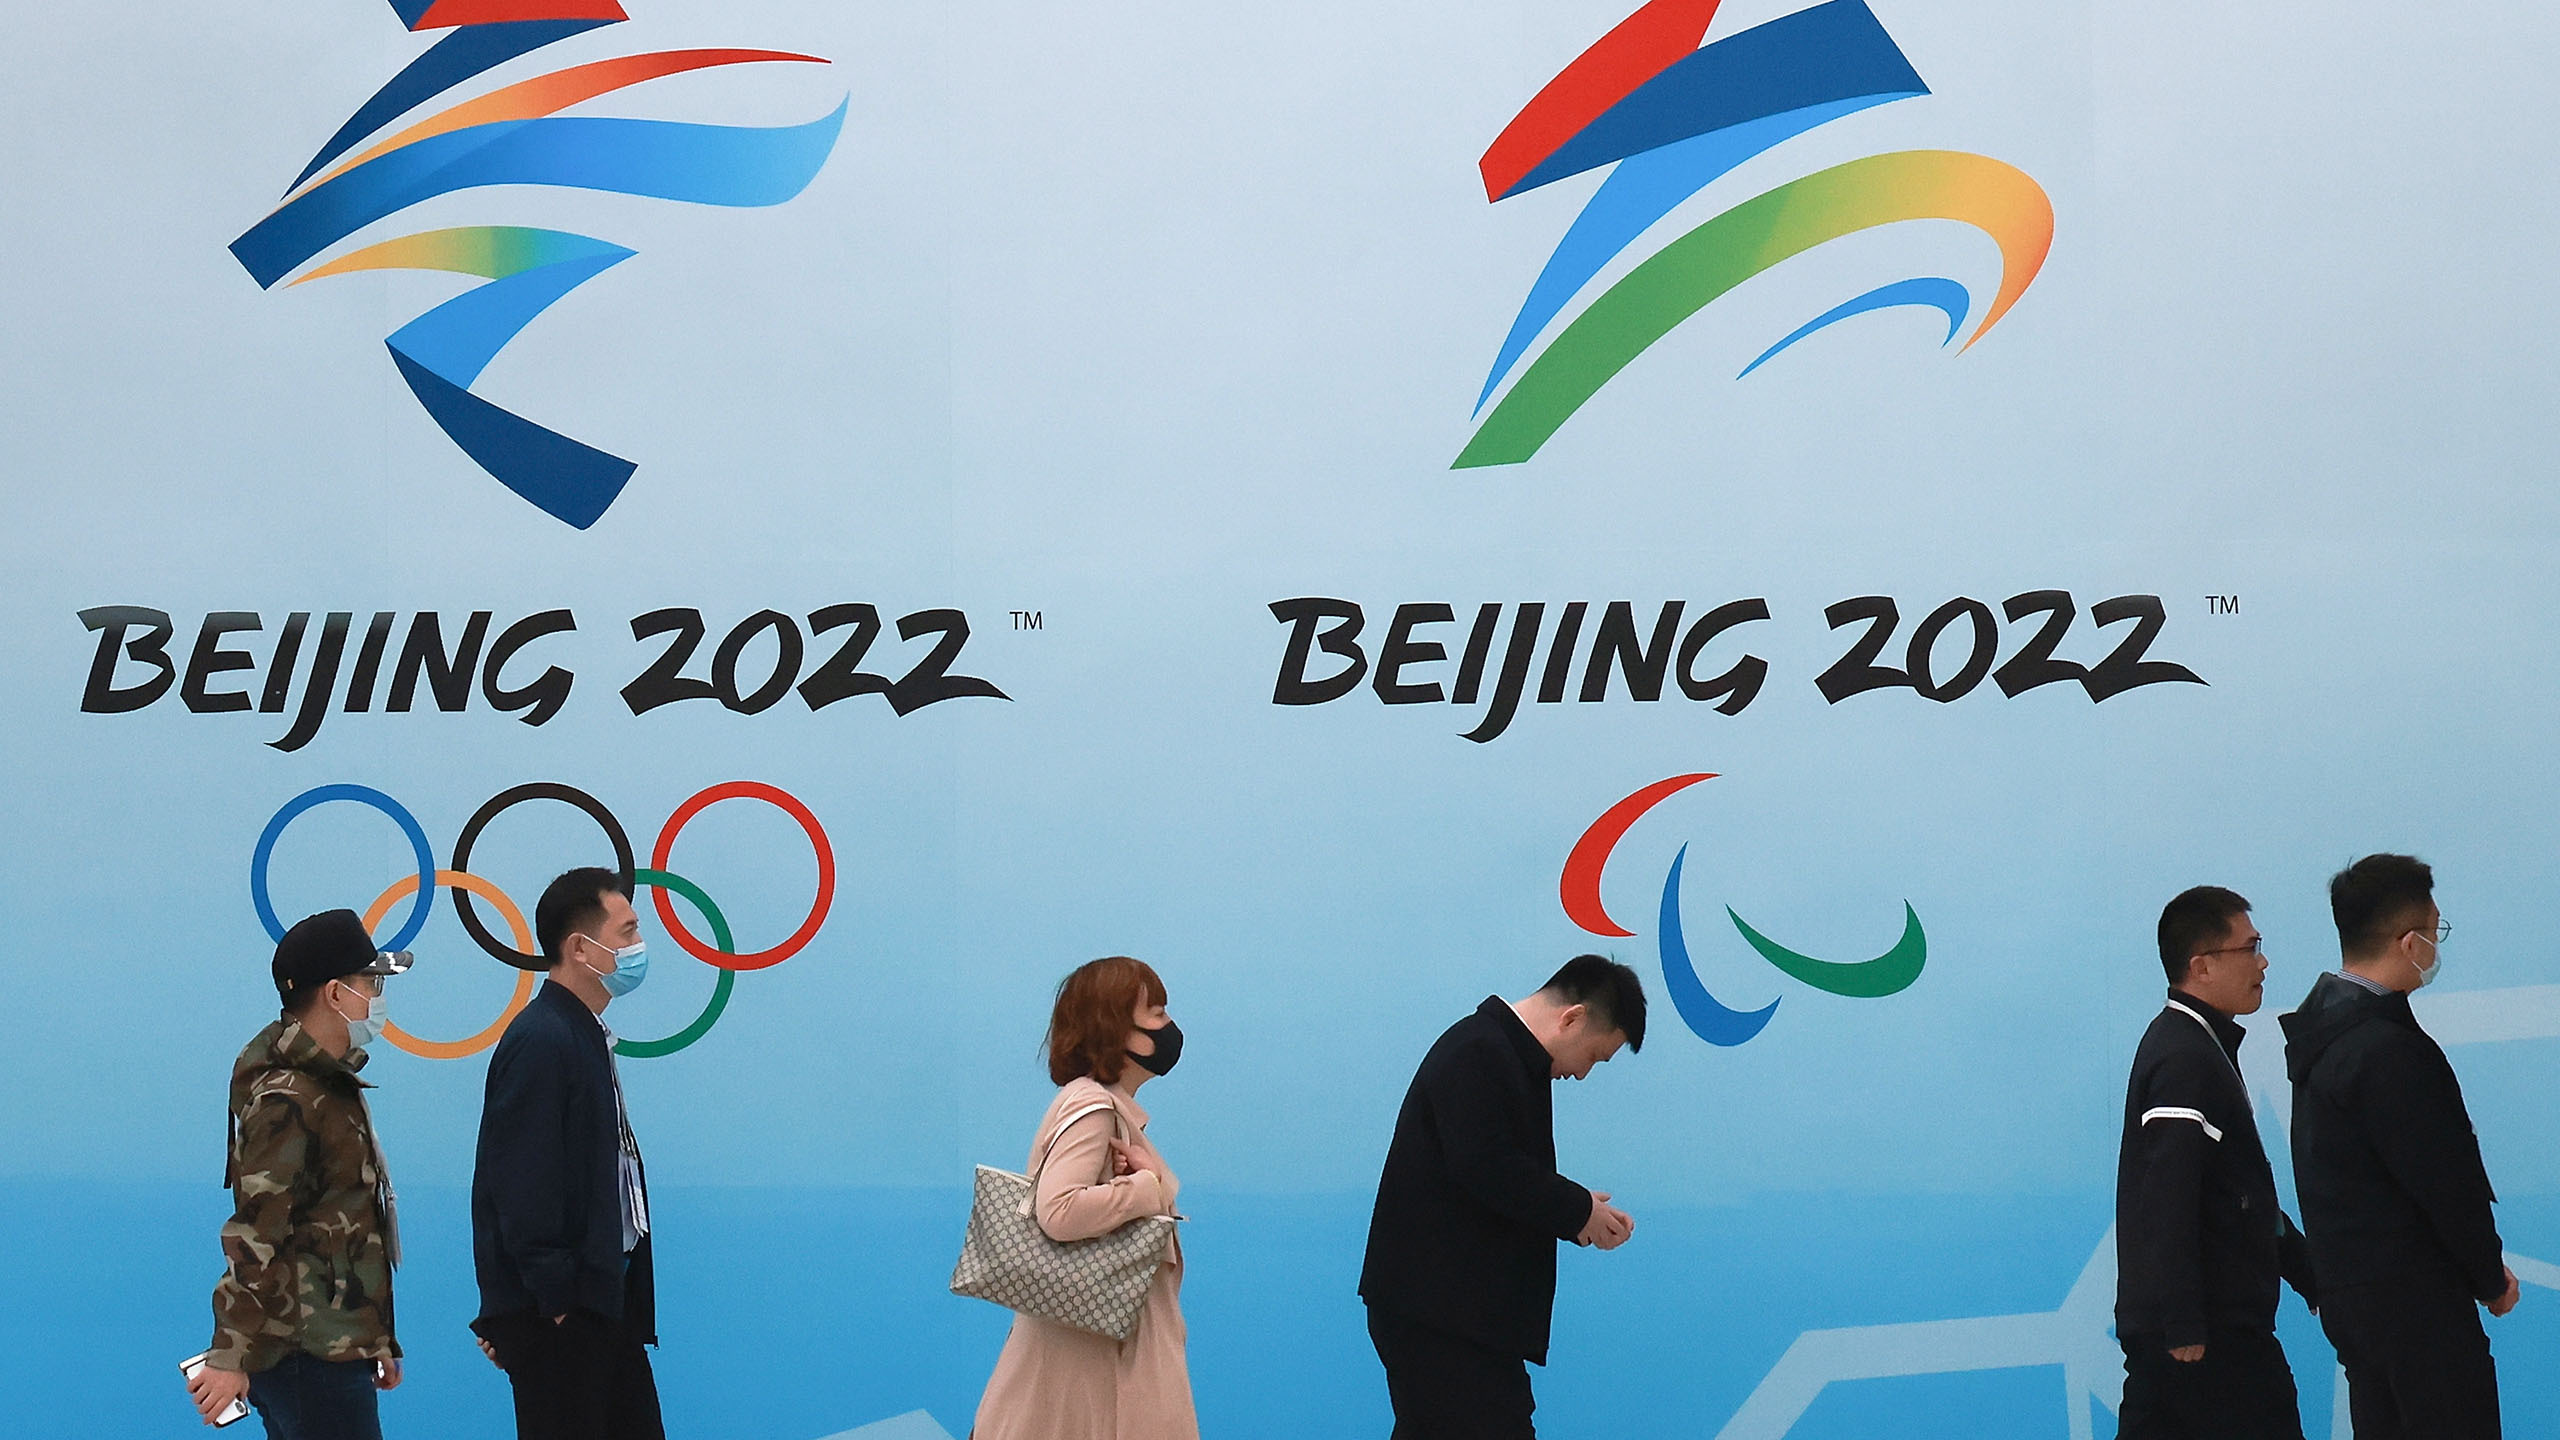 बेइजिङ ओलम्पिकको कूटनीतिक बहिष्कार बारे चिन्तित नरहेको चिन ले जनाएको छ